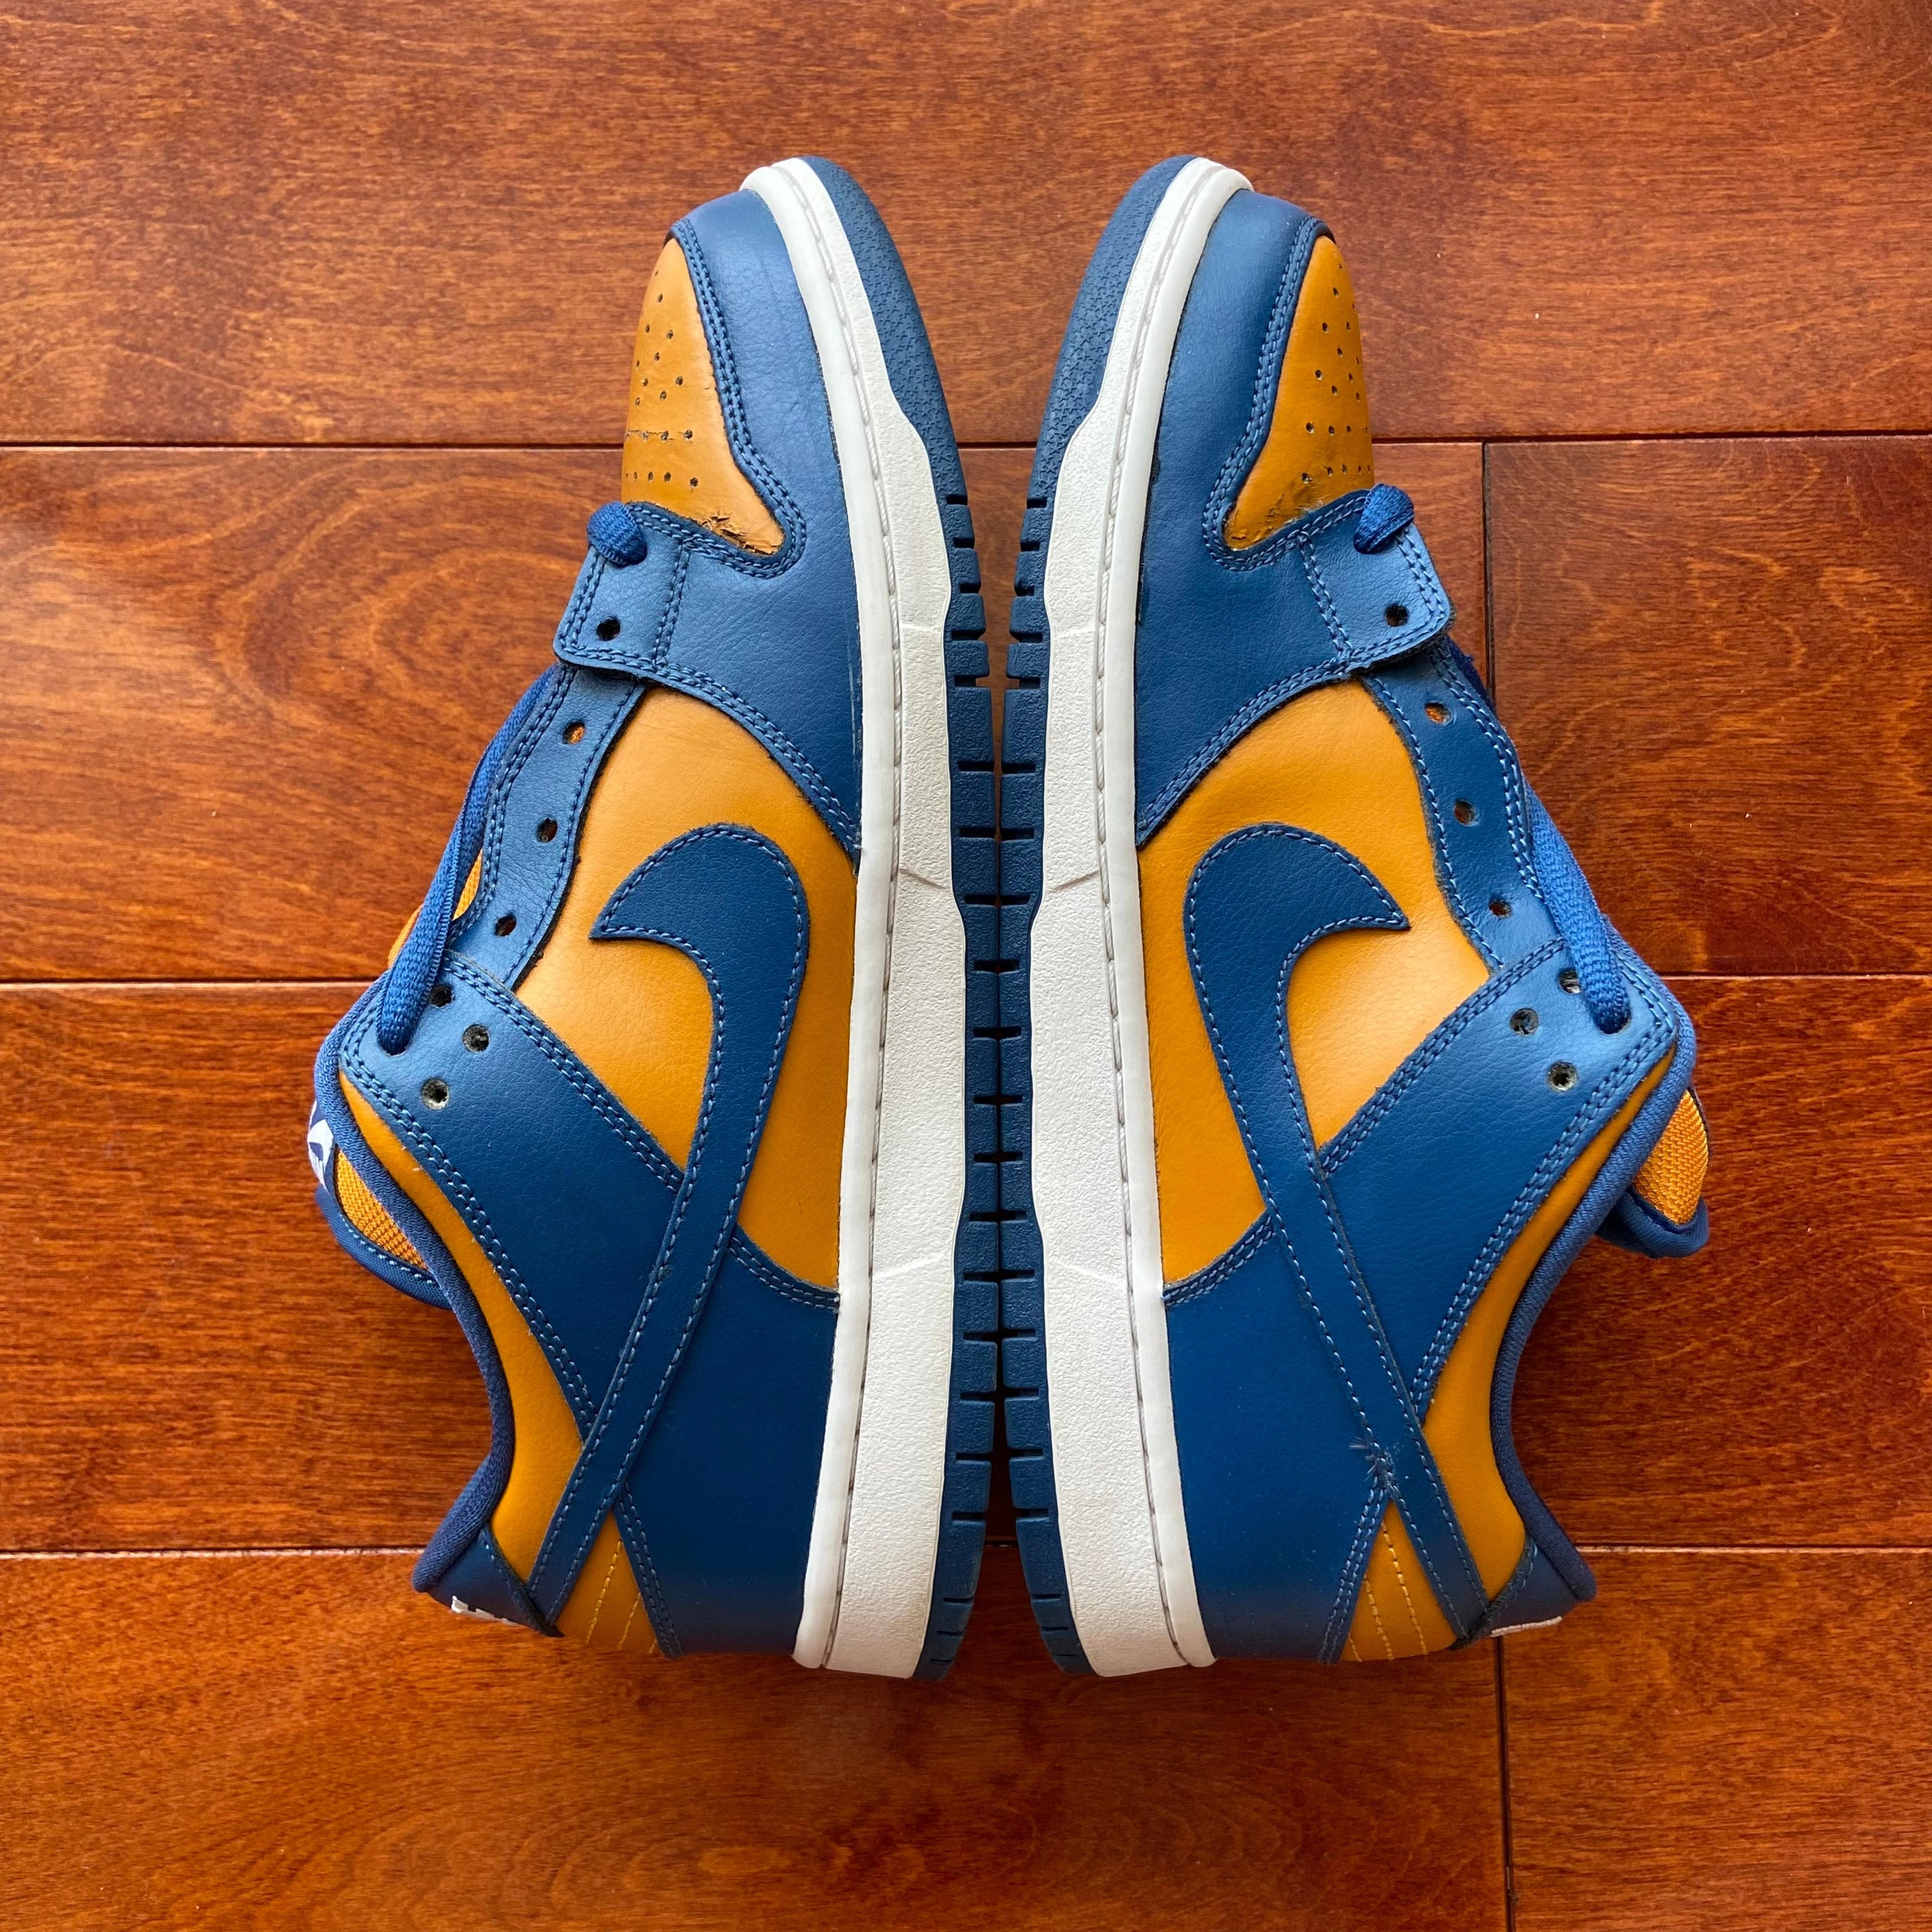 - Nike Sb Dunk "French Blue" Size 9